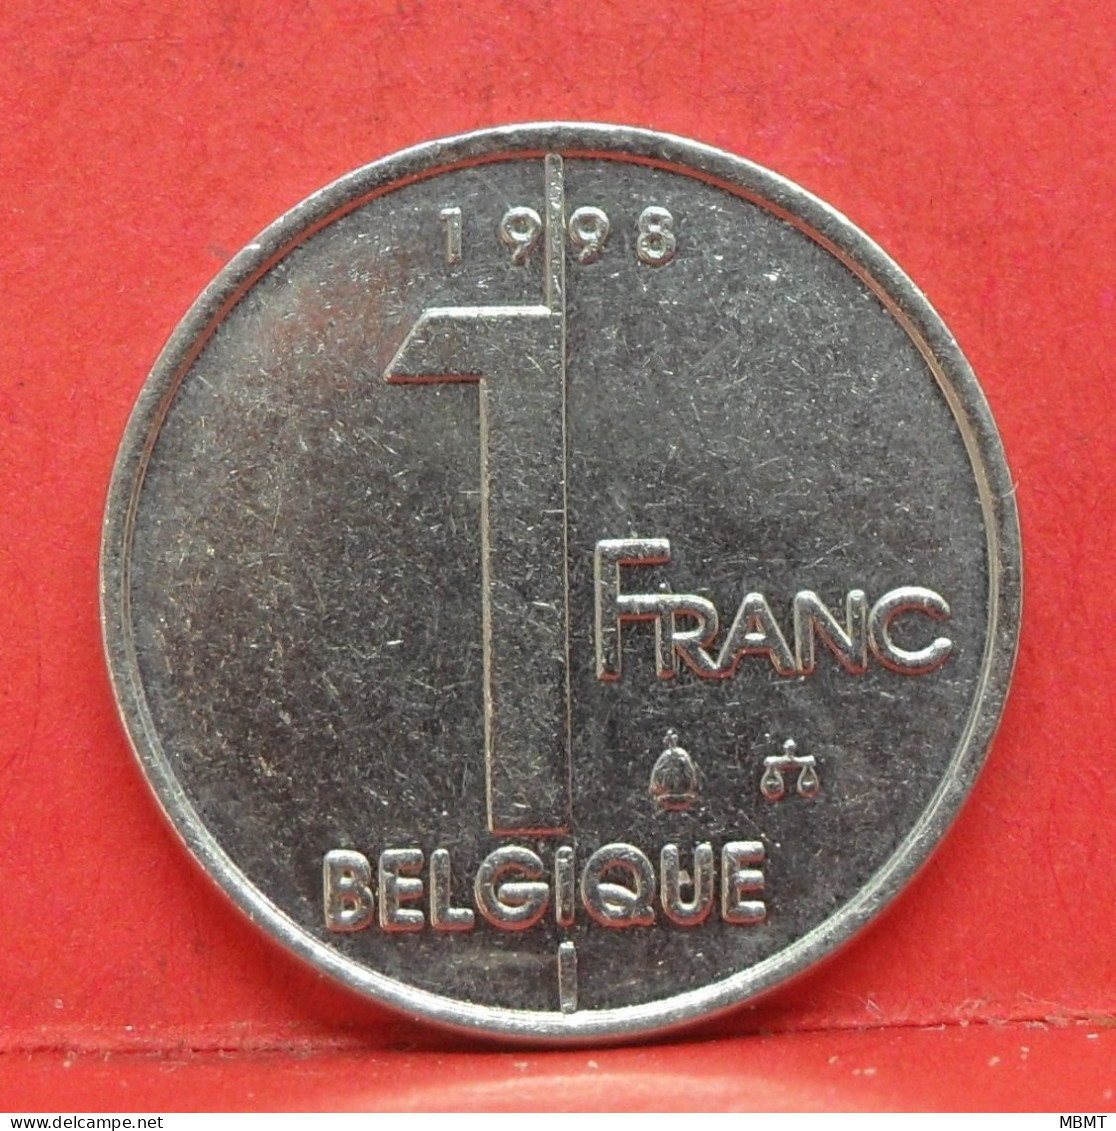 1 Franc 1998 - TTB - Pièce Monnaie Belgique - Article N°1800 - 1 Frank